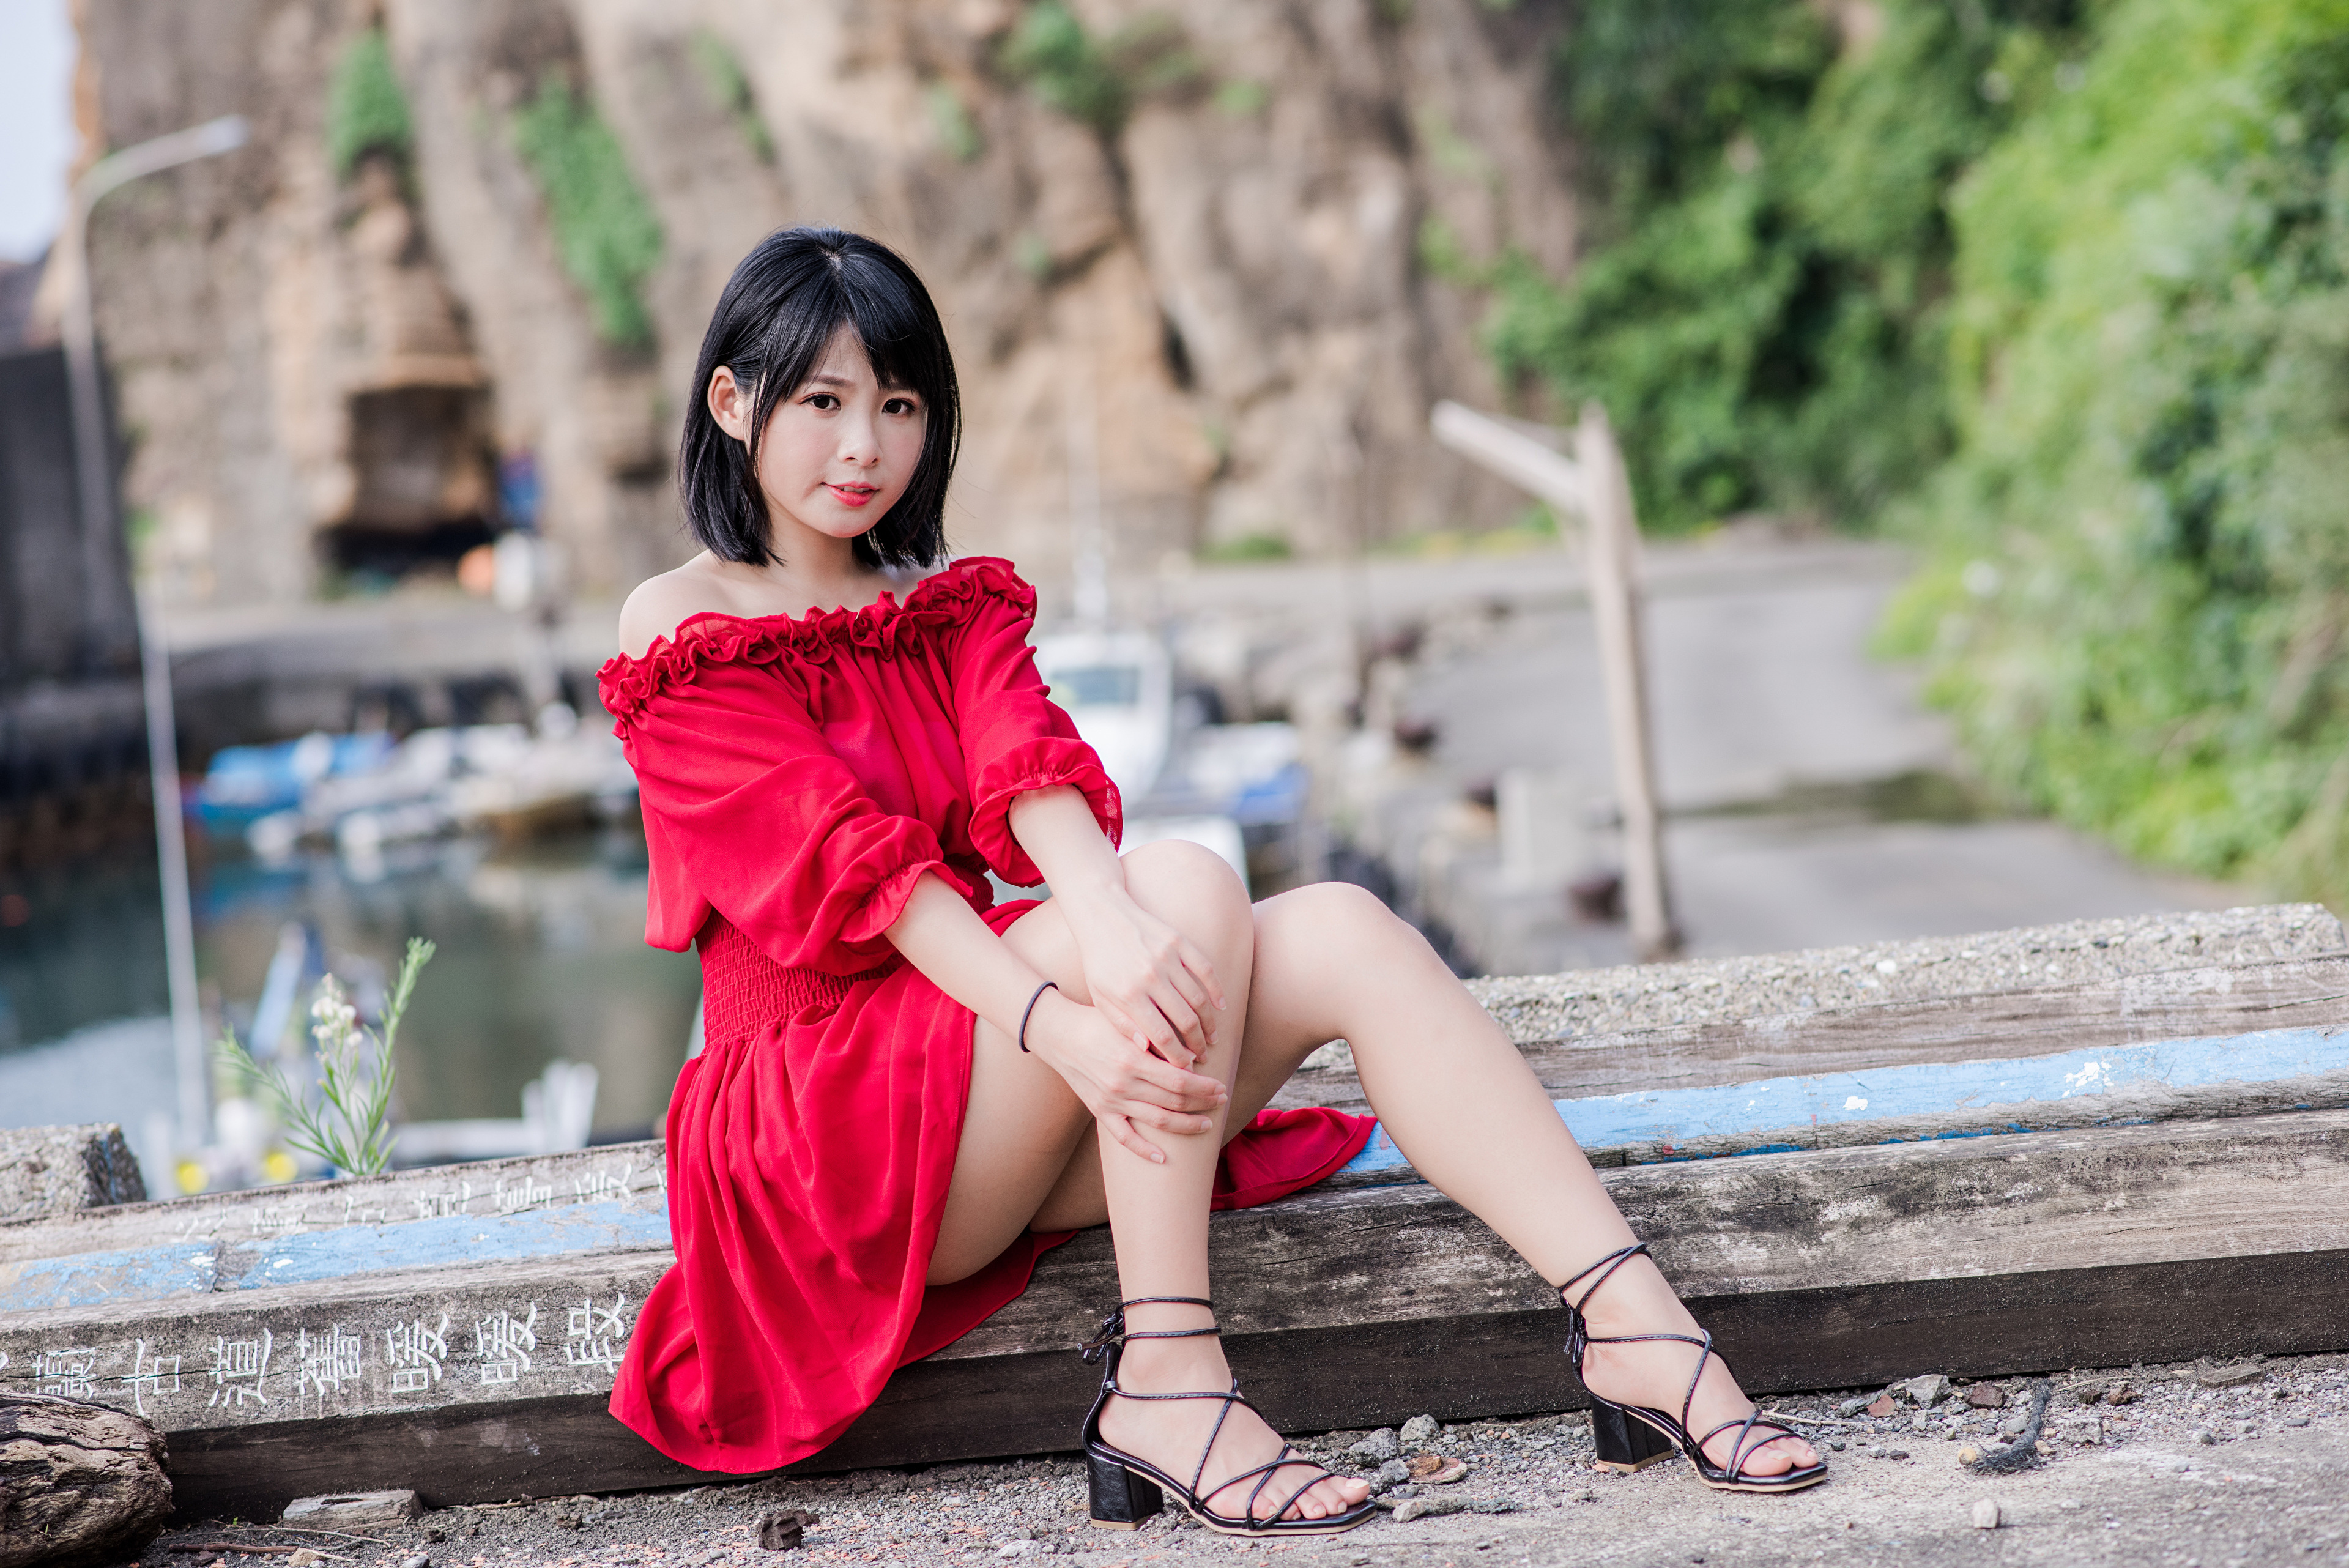 Asian Model Women Black Hair Short Hair Red Dress Barefoot Sandal Sitting Depth Of Field Bushes Dirt 3840x2563